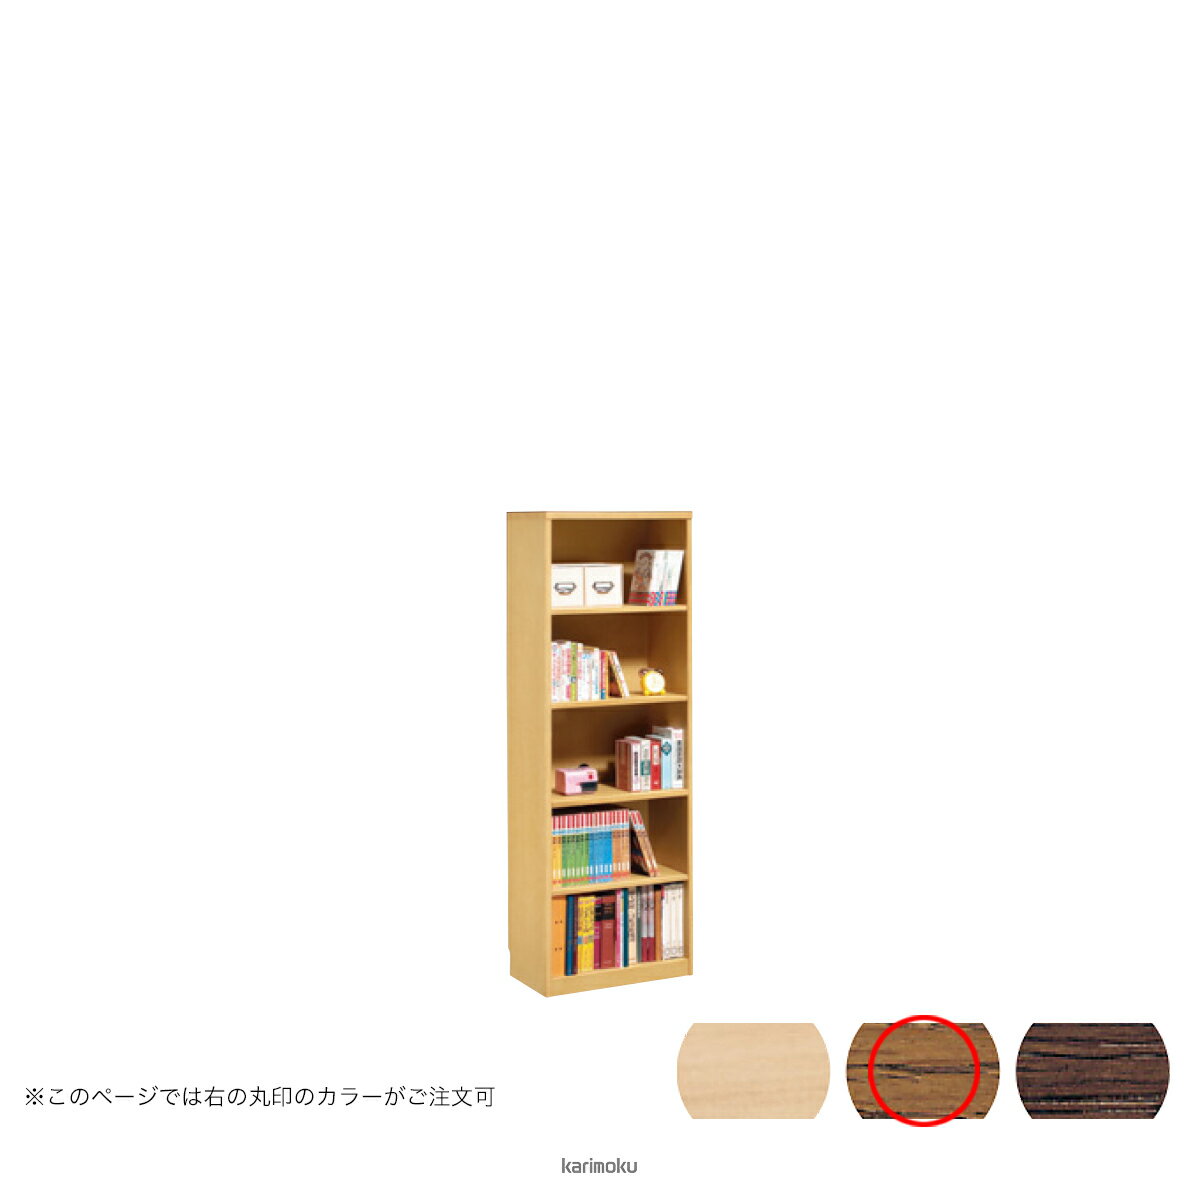 カリモク 書棚 HU2415 [背板付き書棚] (モルトブラウン色)【全国送料無料】【同梱...